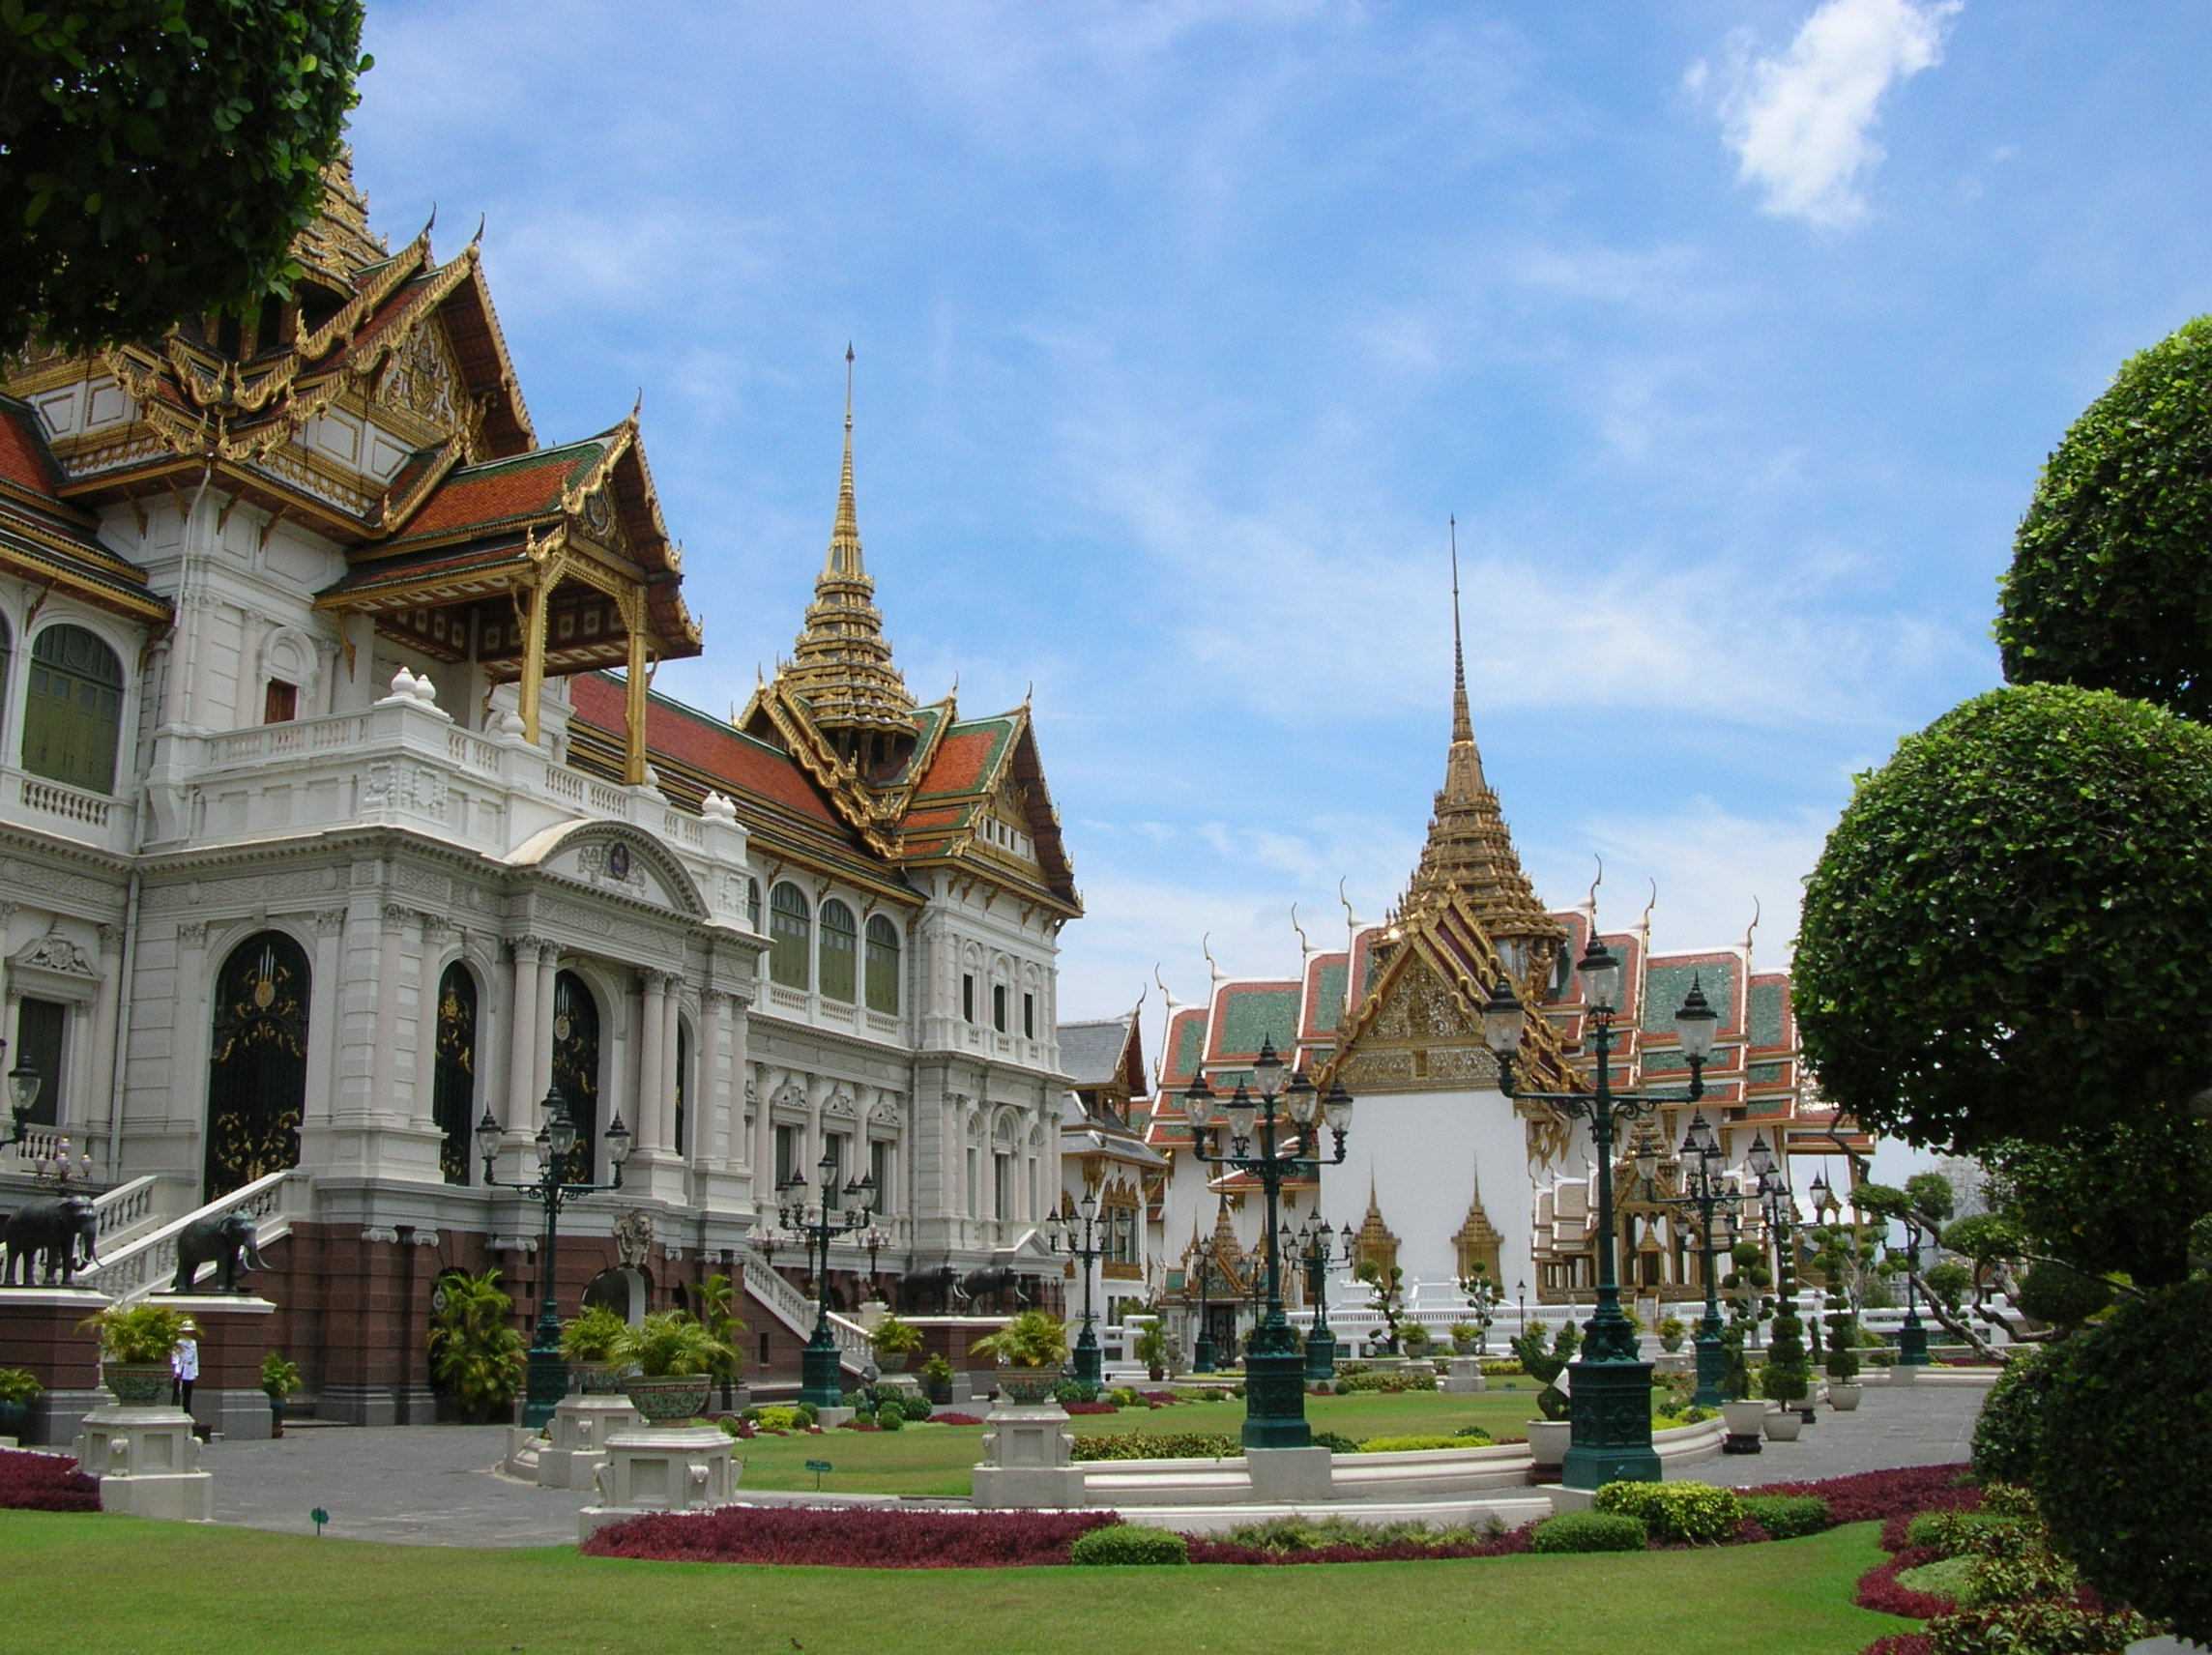 Бангкок дома. Королевский дворец в Бангкоке. Большой Королевский дворец Бангкок Таиланд. Императорский дворец Тайланд. Гранд Палас Бангкок.